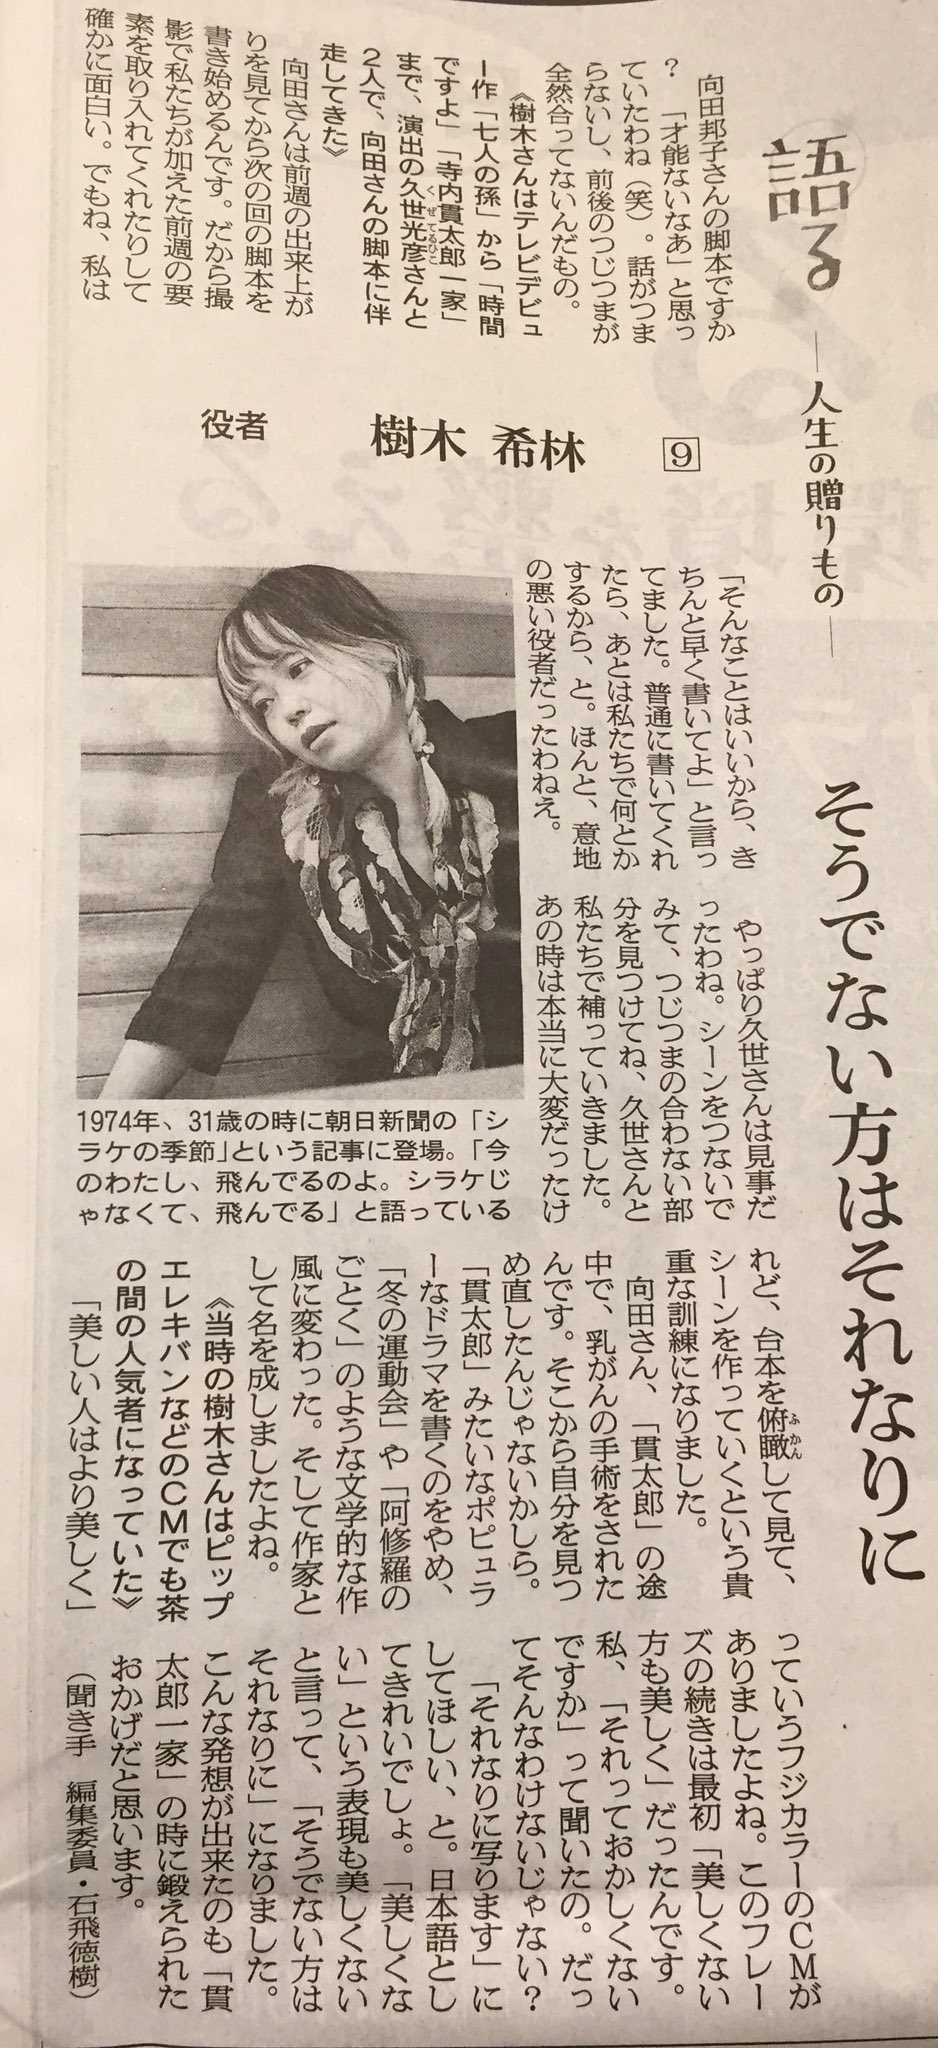 じゃっきー 朝日新聞の樹木希林の記事 興味深い 向田邦子さんの脚本ですか 才能ないなあ と思っていたわね 笑 話が つまらないし 前後のつじつまが全然あってないんだもの フジカラーのcm そうでない方はそれなりに は樹木希林のアイデア